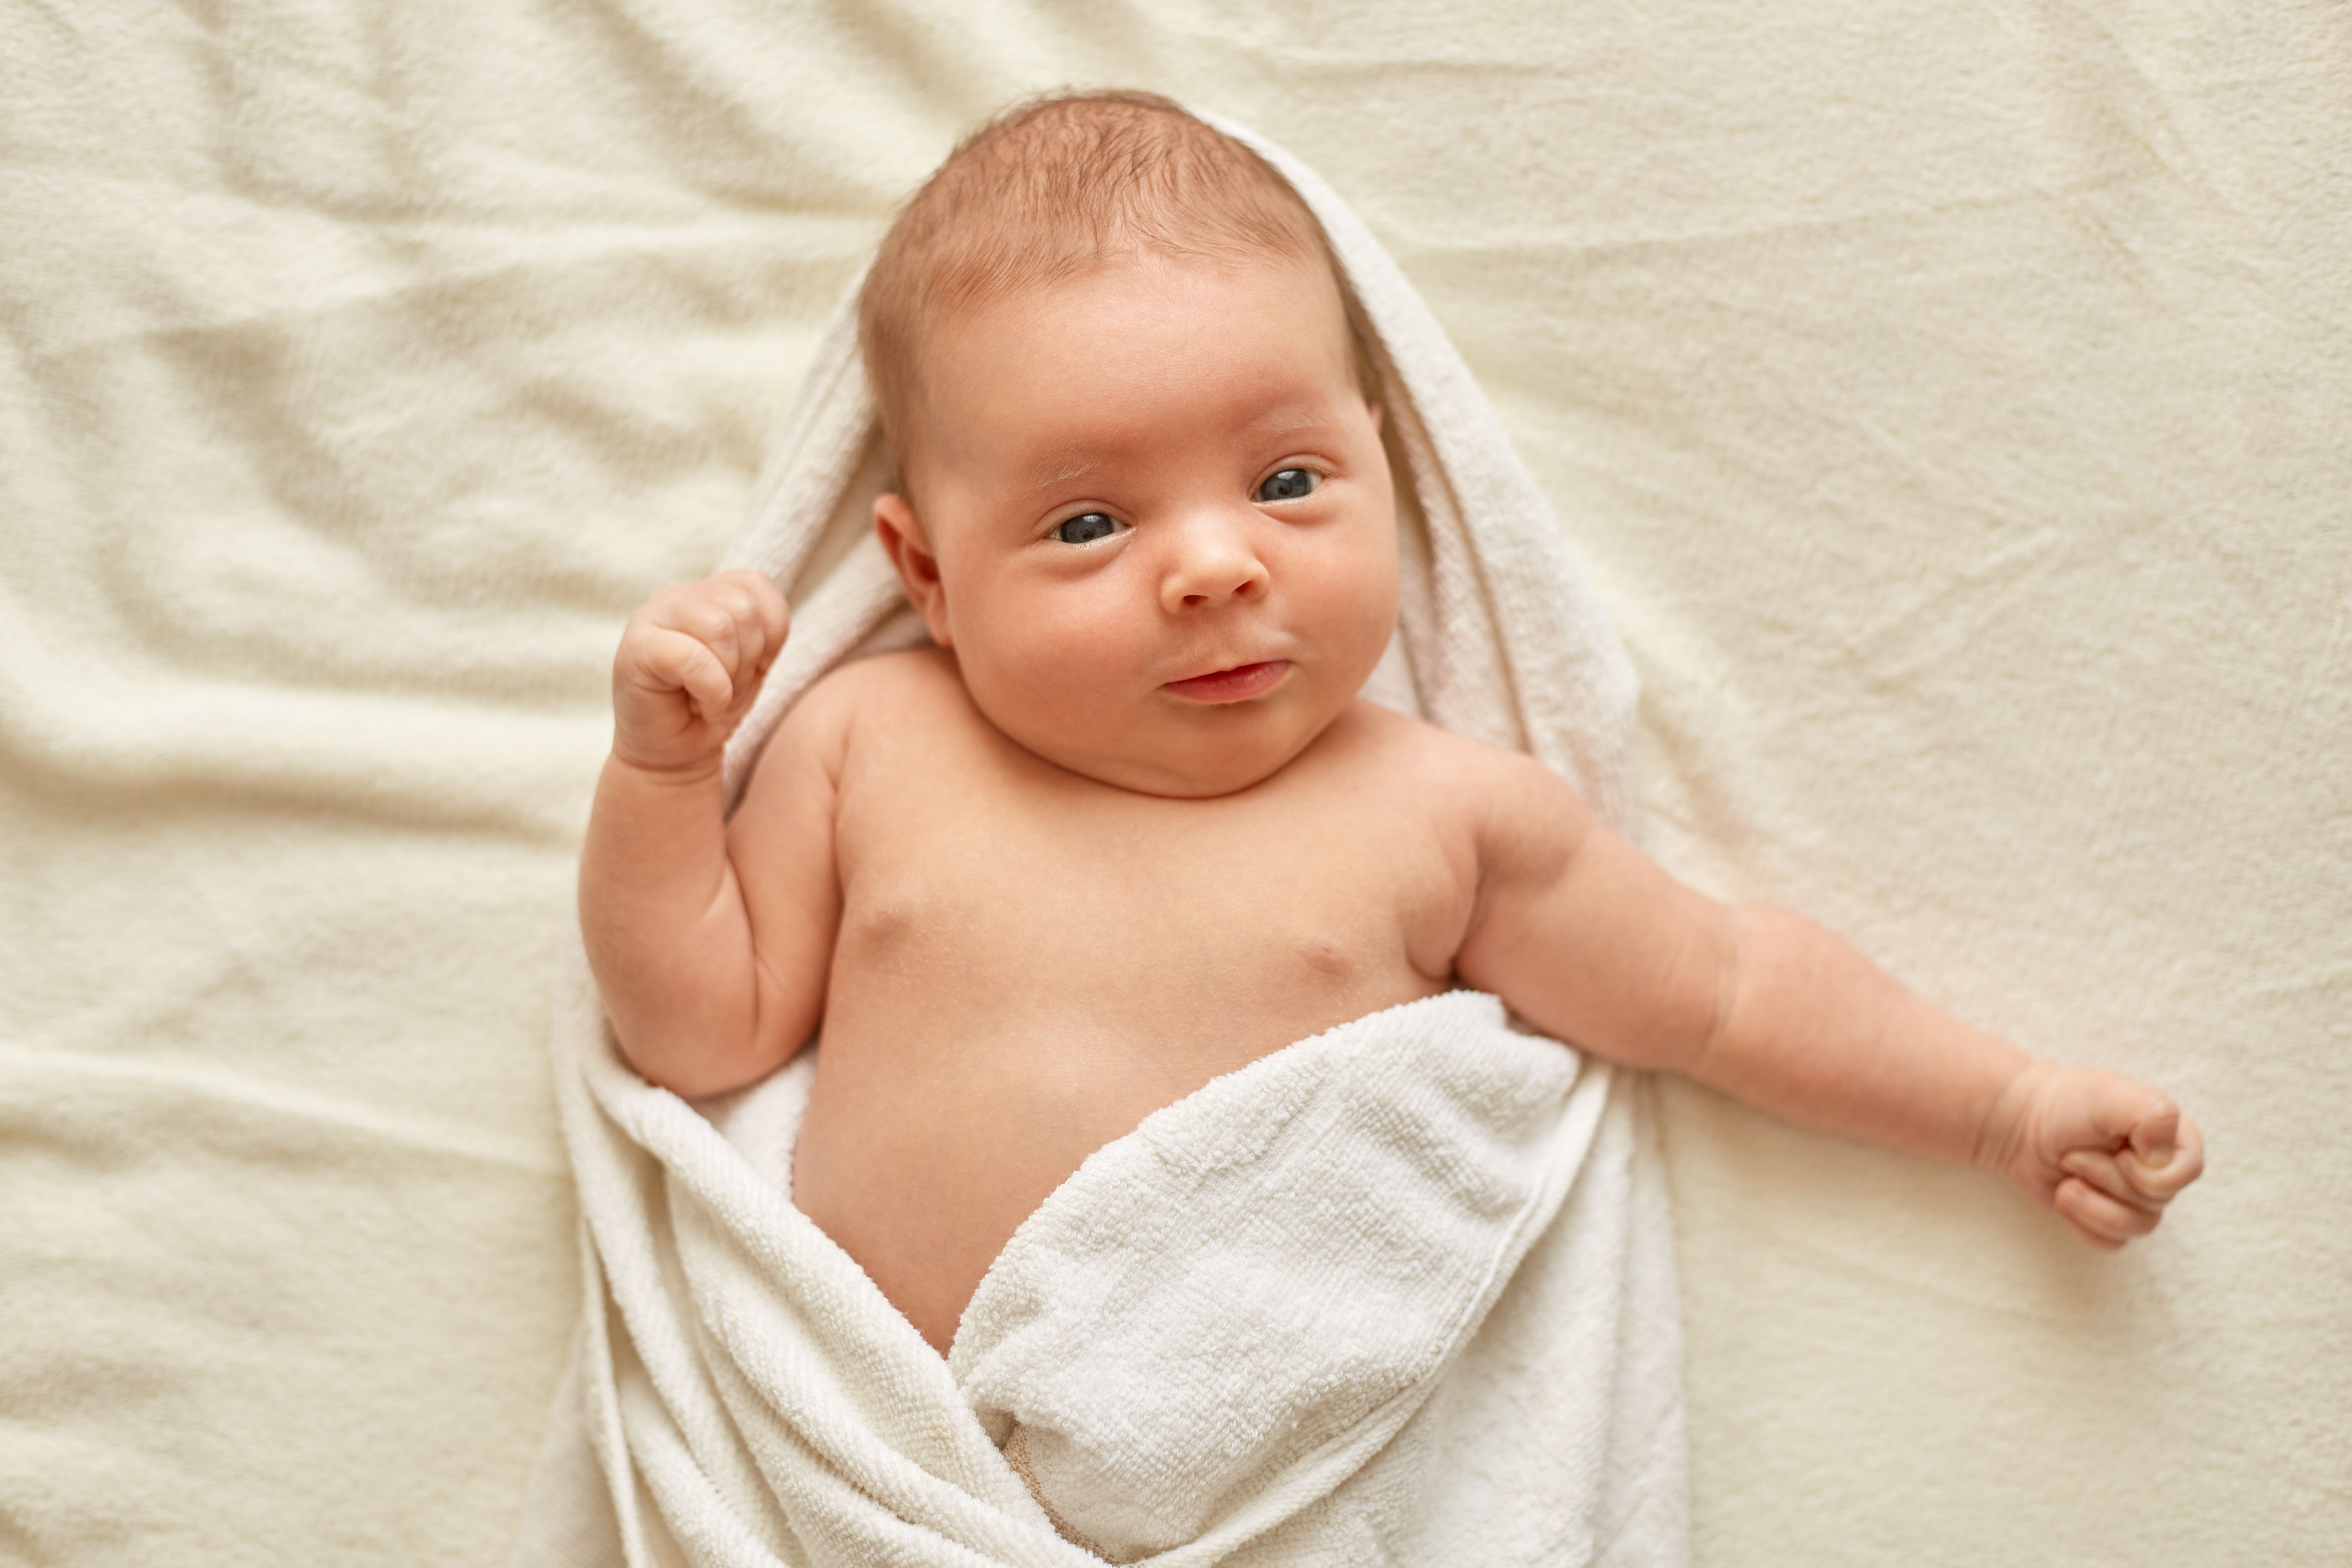 Ультразвуковое исследование органов грудной полости у новорожденных и недоношенных детей